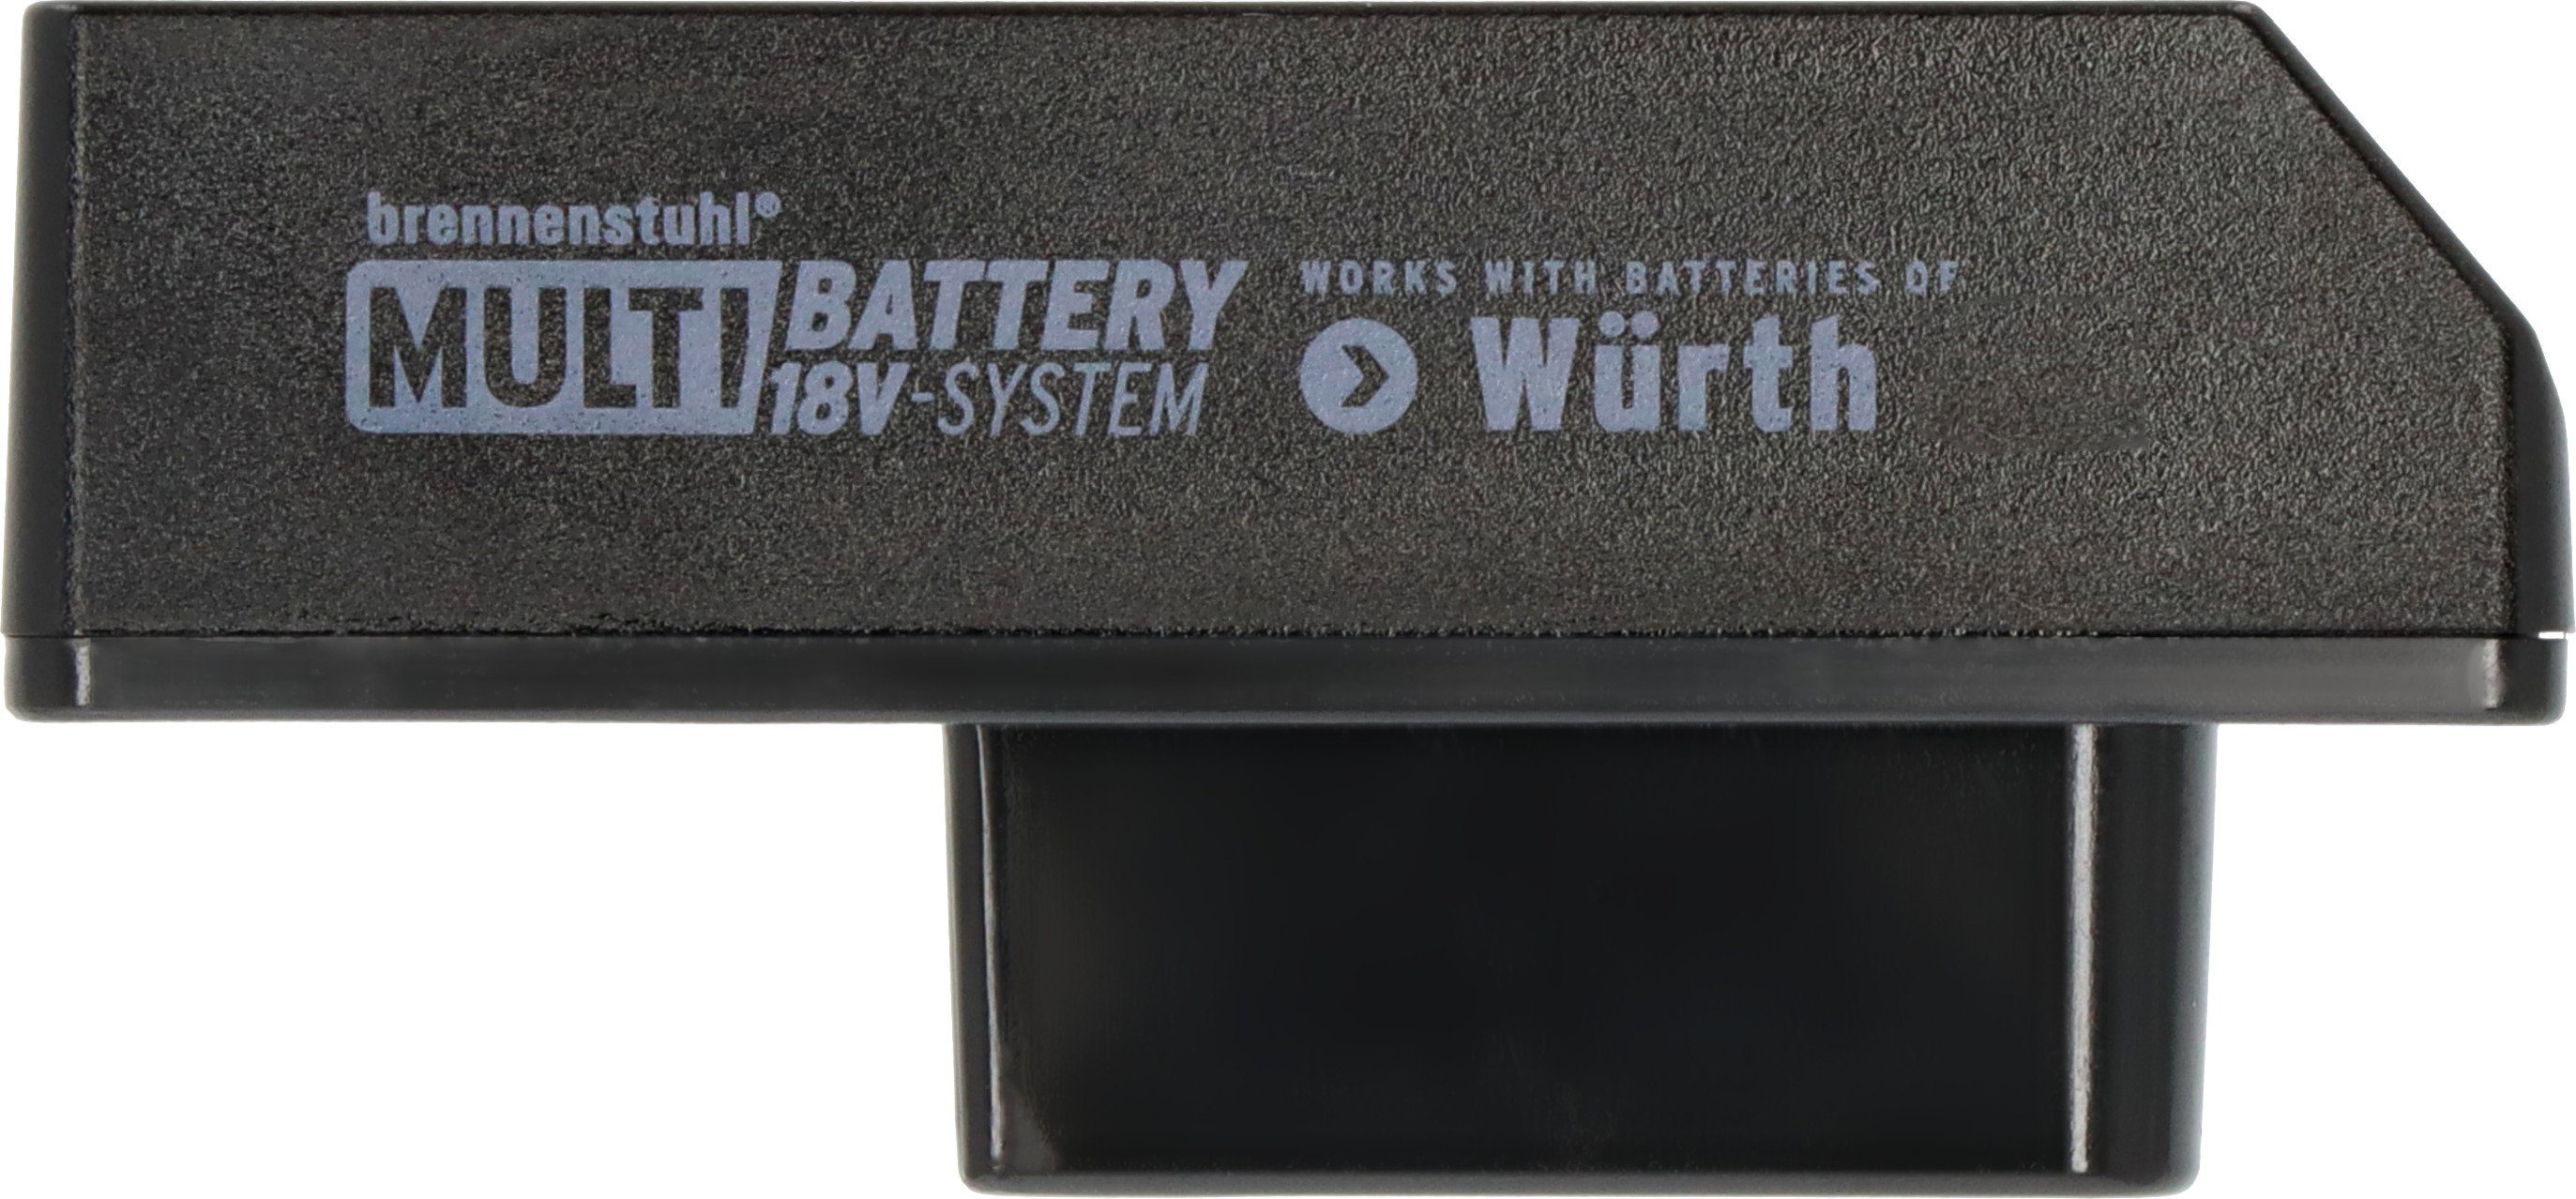 Brennenstuhl Würth Adapter, für Baustrahler Multi Battery 18V System im